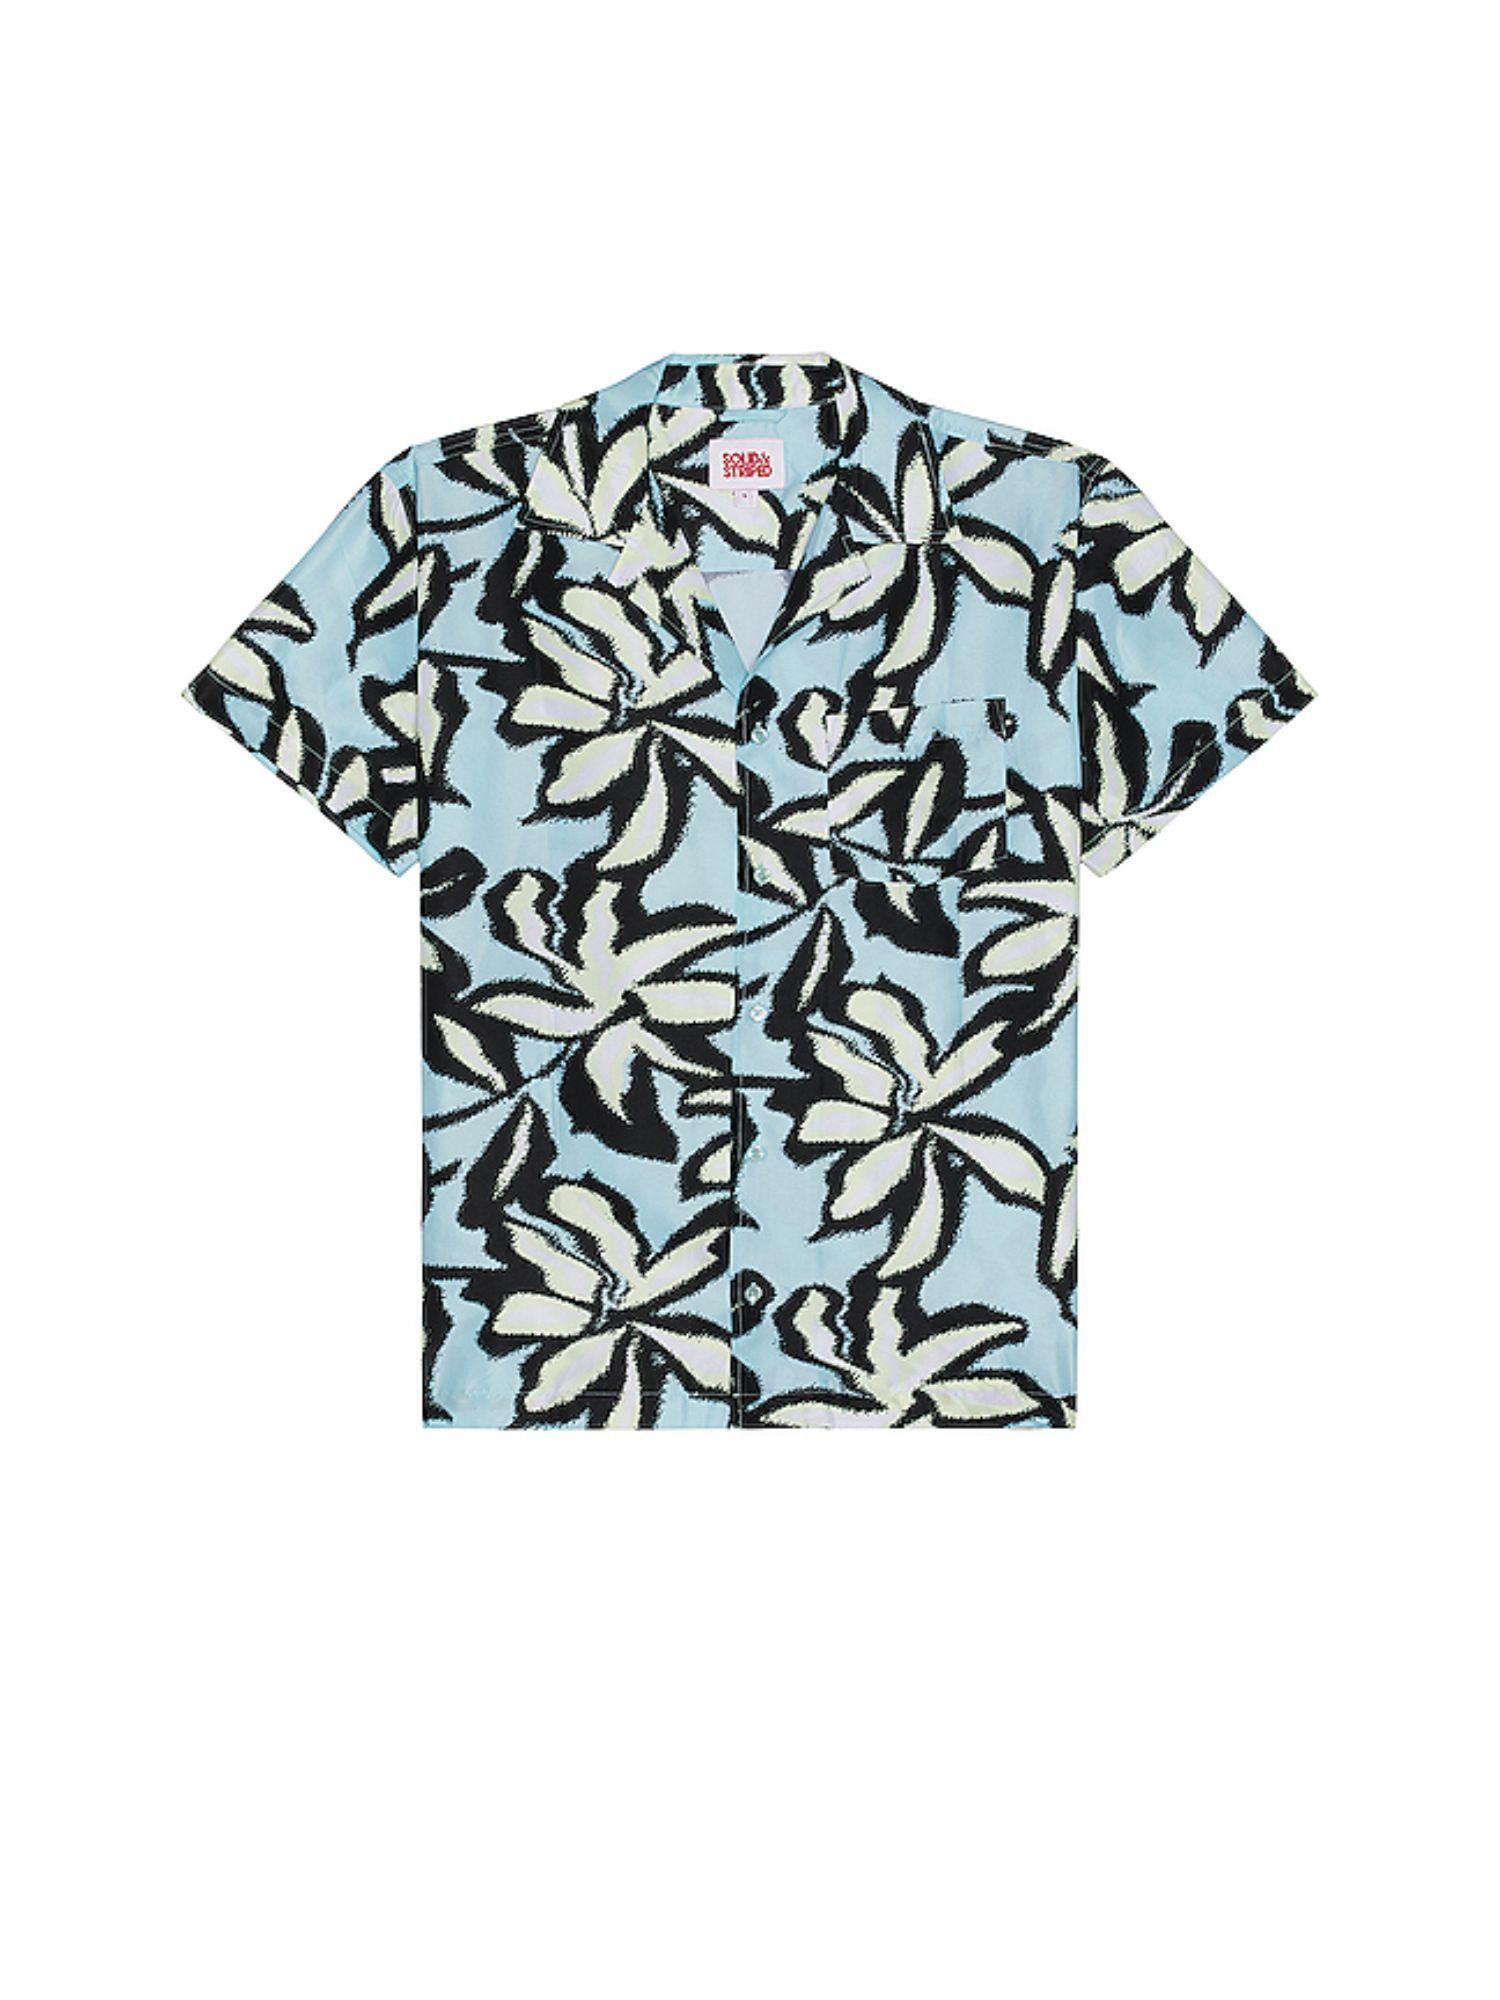 The Cabana Shirt